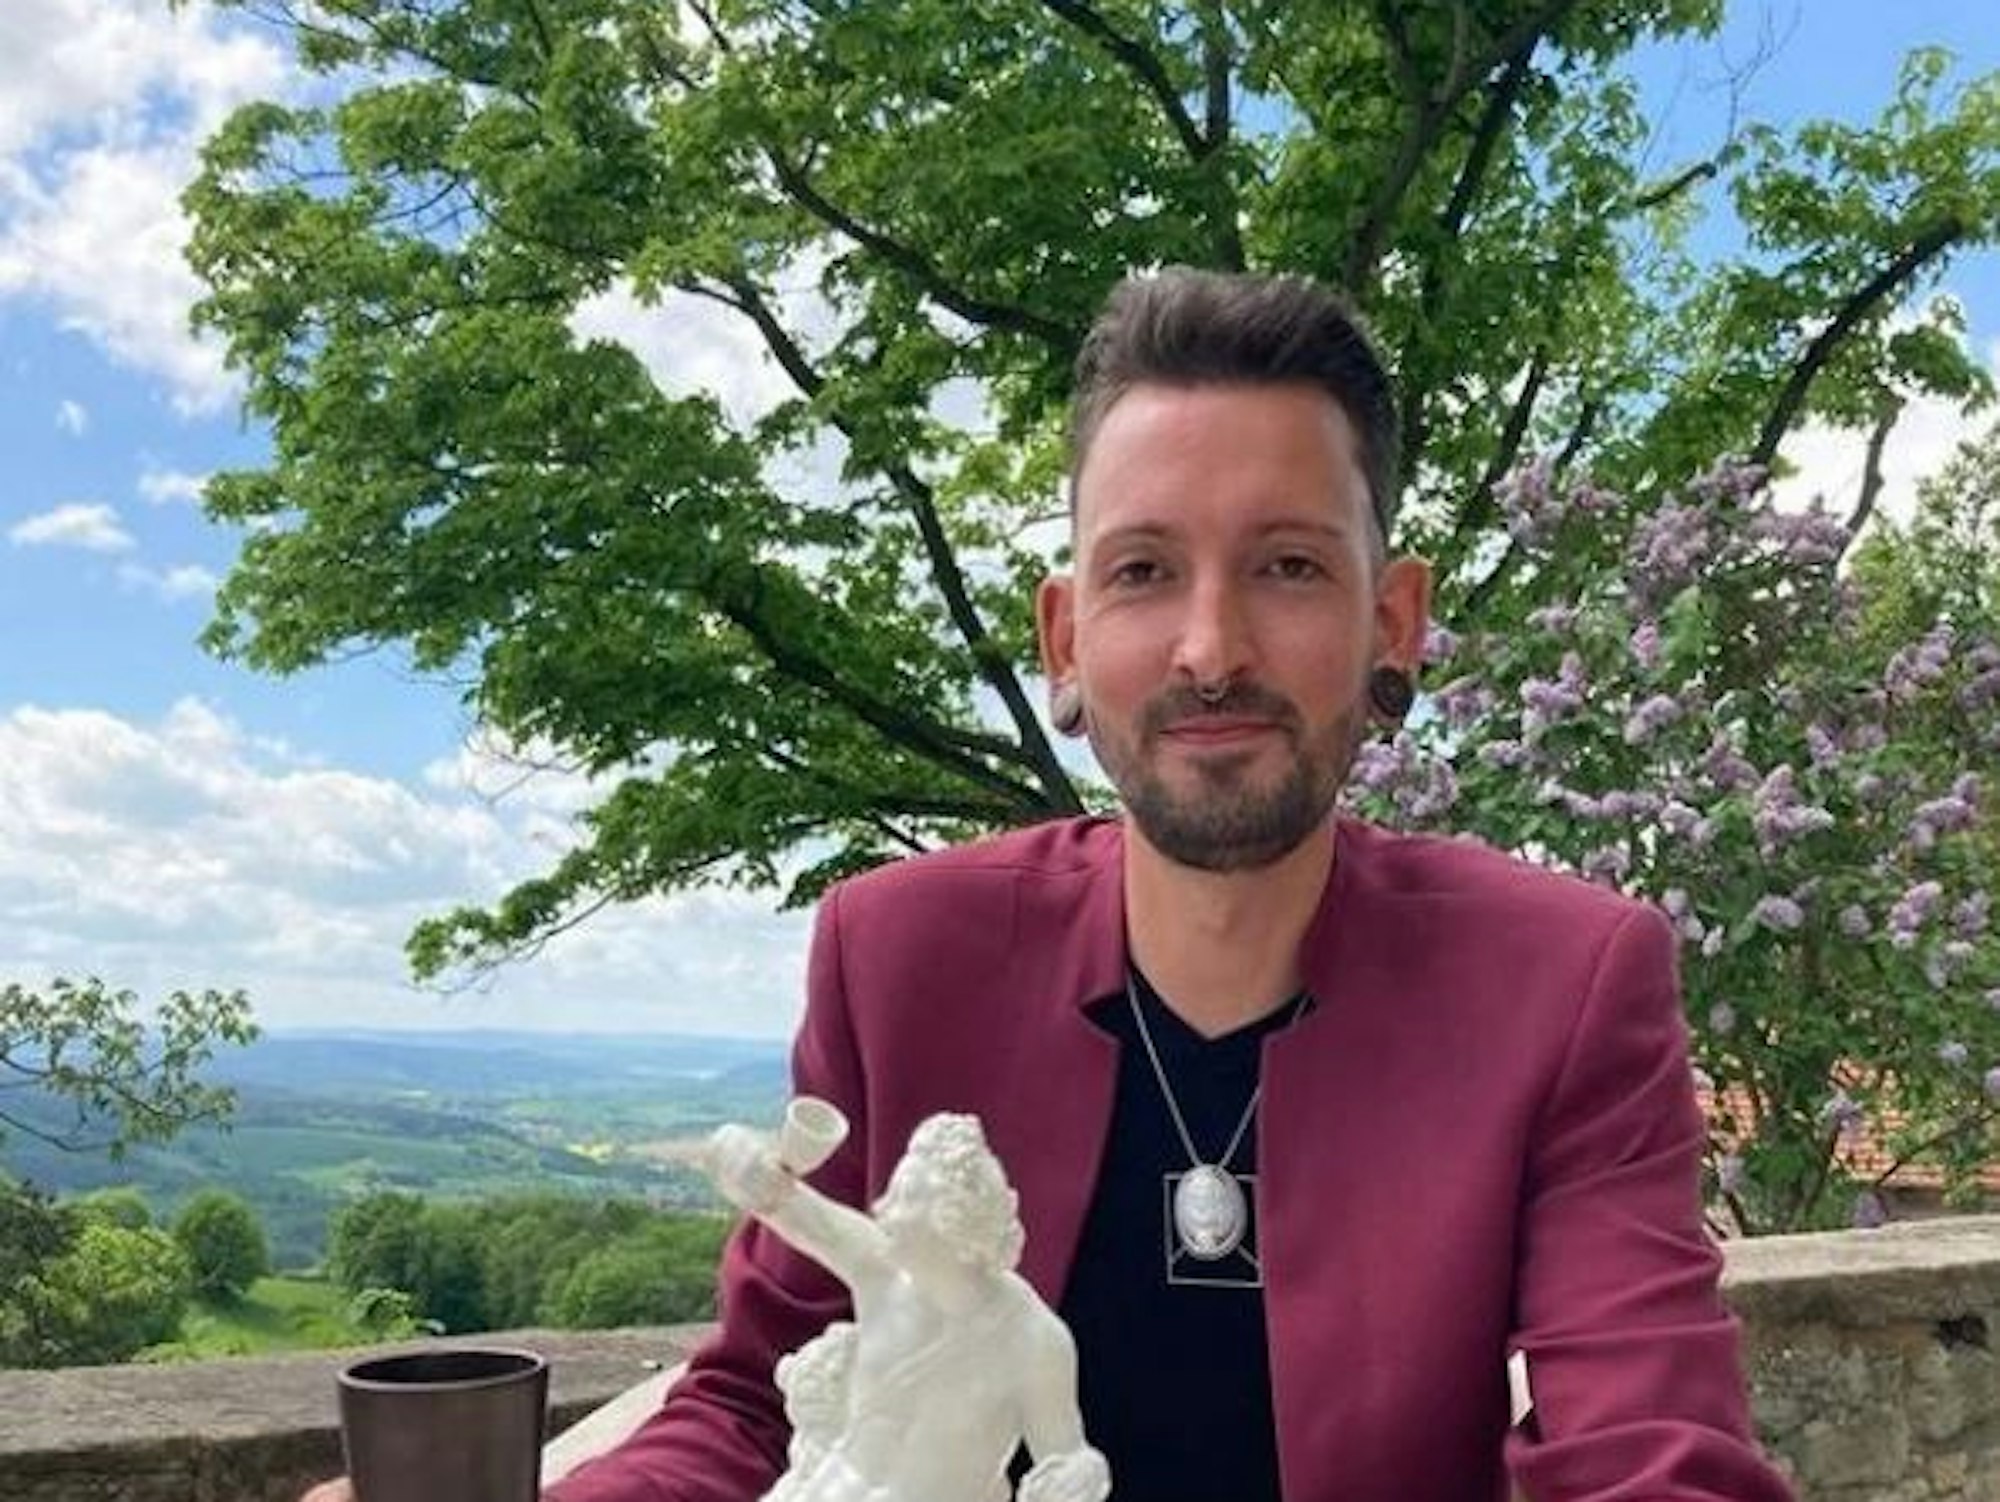 Bares für Rares-Händler Fabian Kahl, hier zu sehen auf seinem Instagram-Kanal im Mai 2022, sorgt bei seinen Fans mit einer neuen Frisur für überraschte Gesichter.